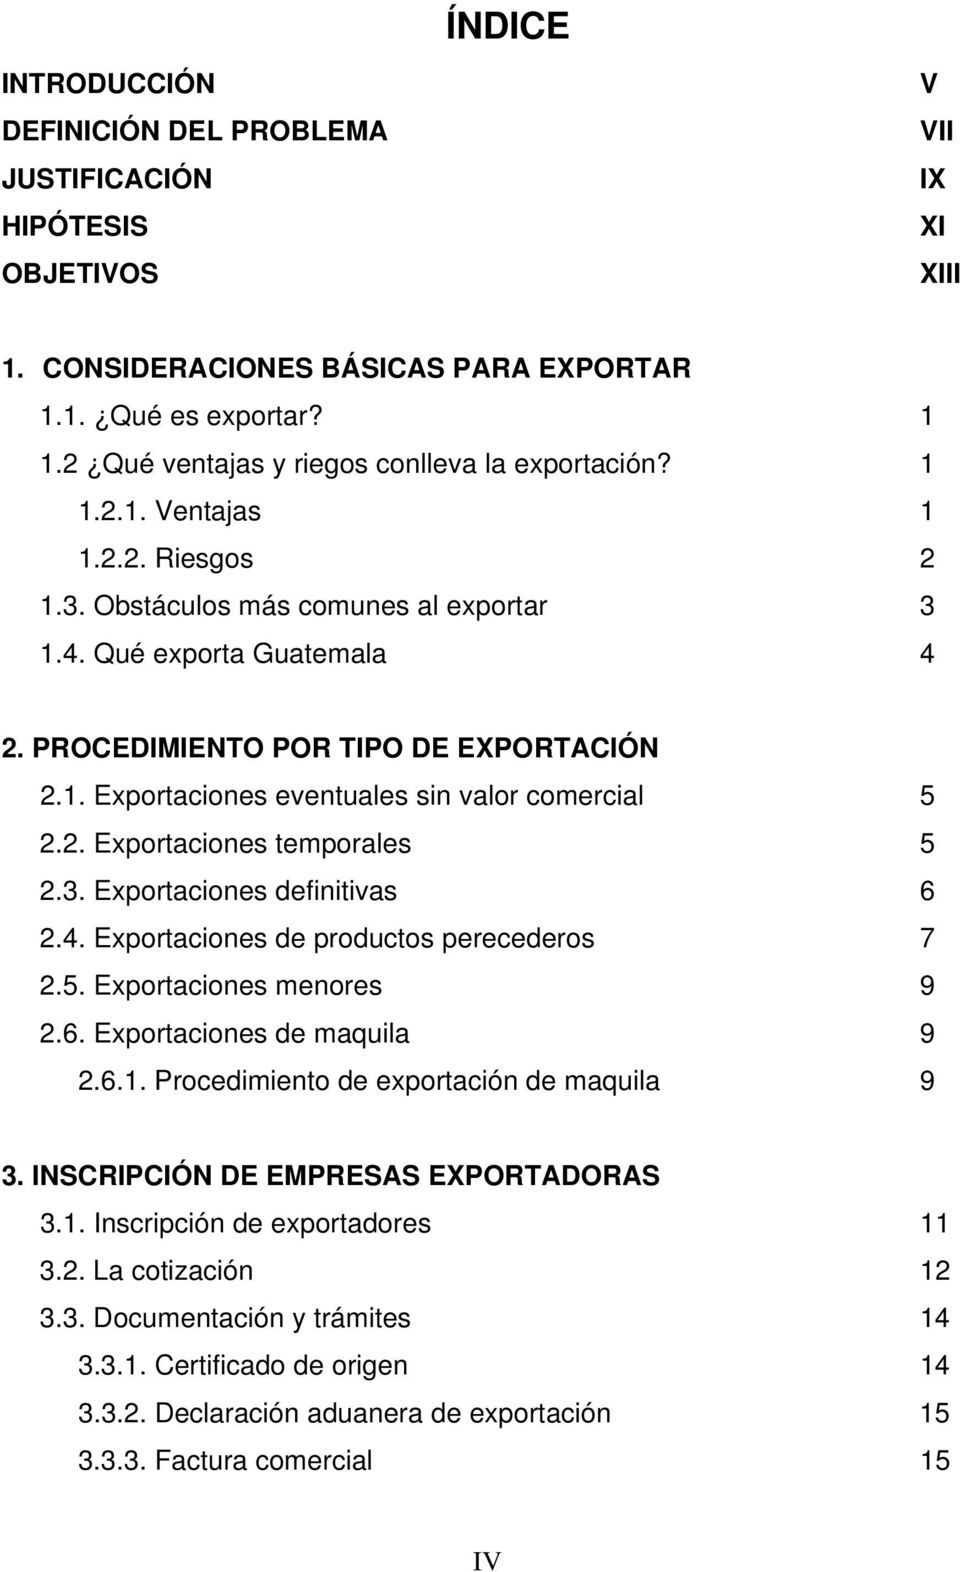 1. Exportaciones eventuales sin valor comercial 5 2.2. Exportaciones temporales 5 2.3. Exportaciones definitivas 6 2.4. Exportaciones de productos perecederos 7 2.5. Exportaciones menores 9 2.6. Exportaciones de maquila 9 2.